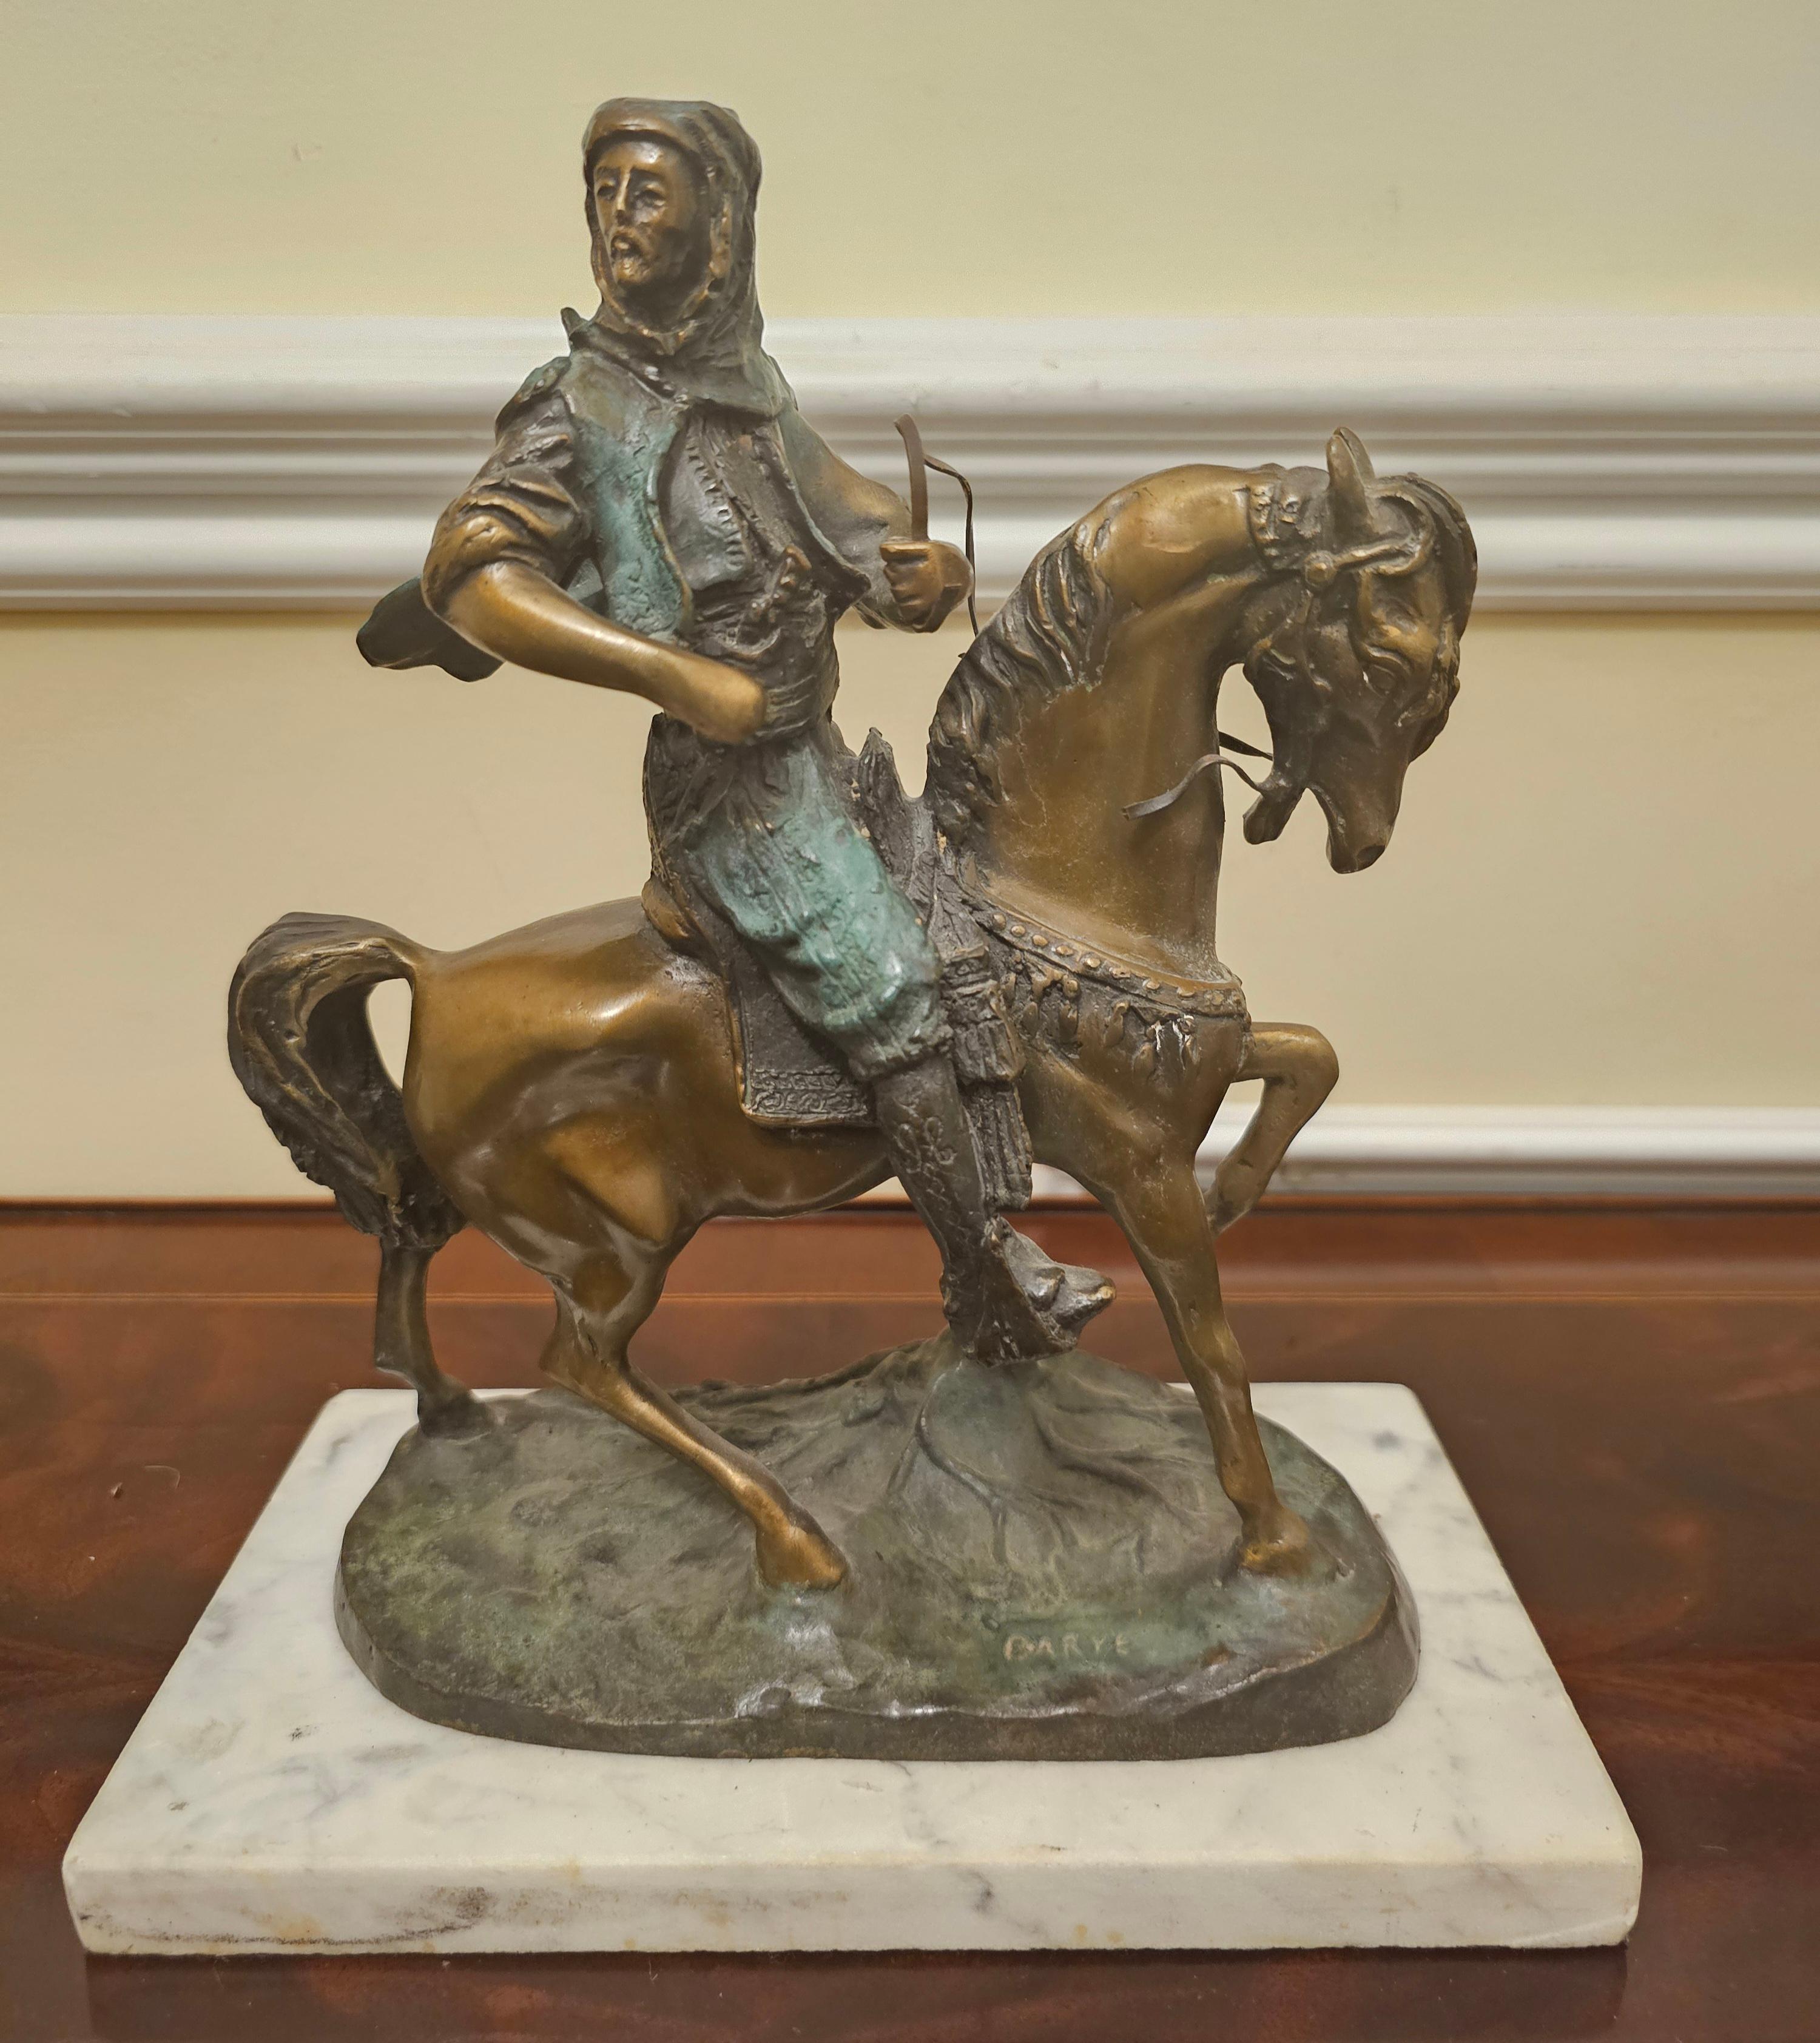 Groupe en bronze vert-de-gris de la fin du 19e siècle représentant un chasseur arabe à cheval. D'après le modèle d'Alfred Barye et d'Emile Guillemin, fin du XIXe siècle, portant un costume élaboré et sa prise en bandoulière sur le dos du cheval, sur